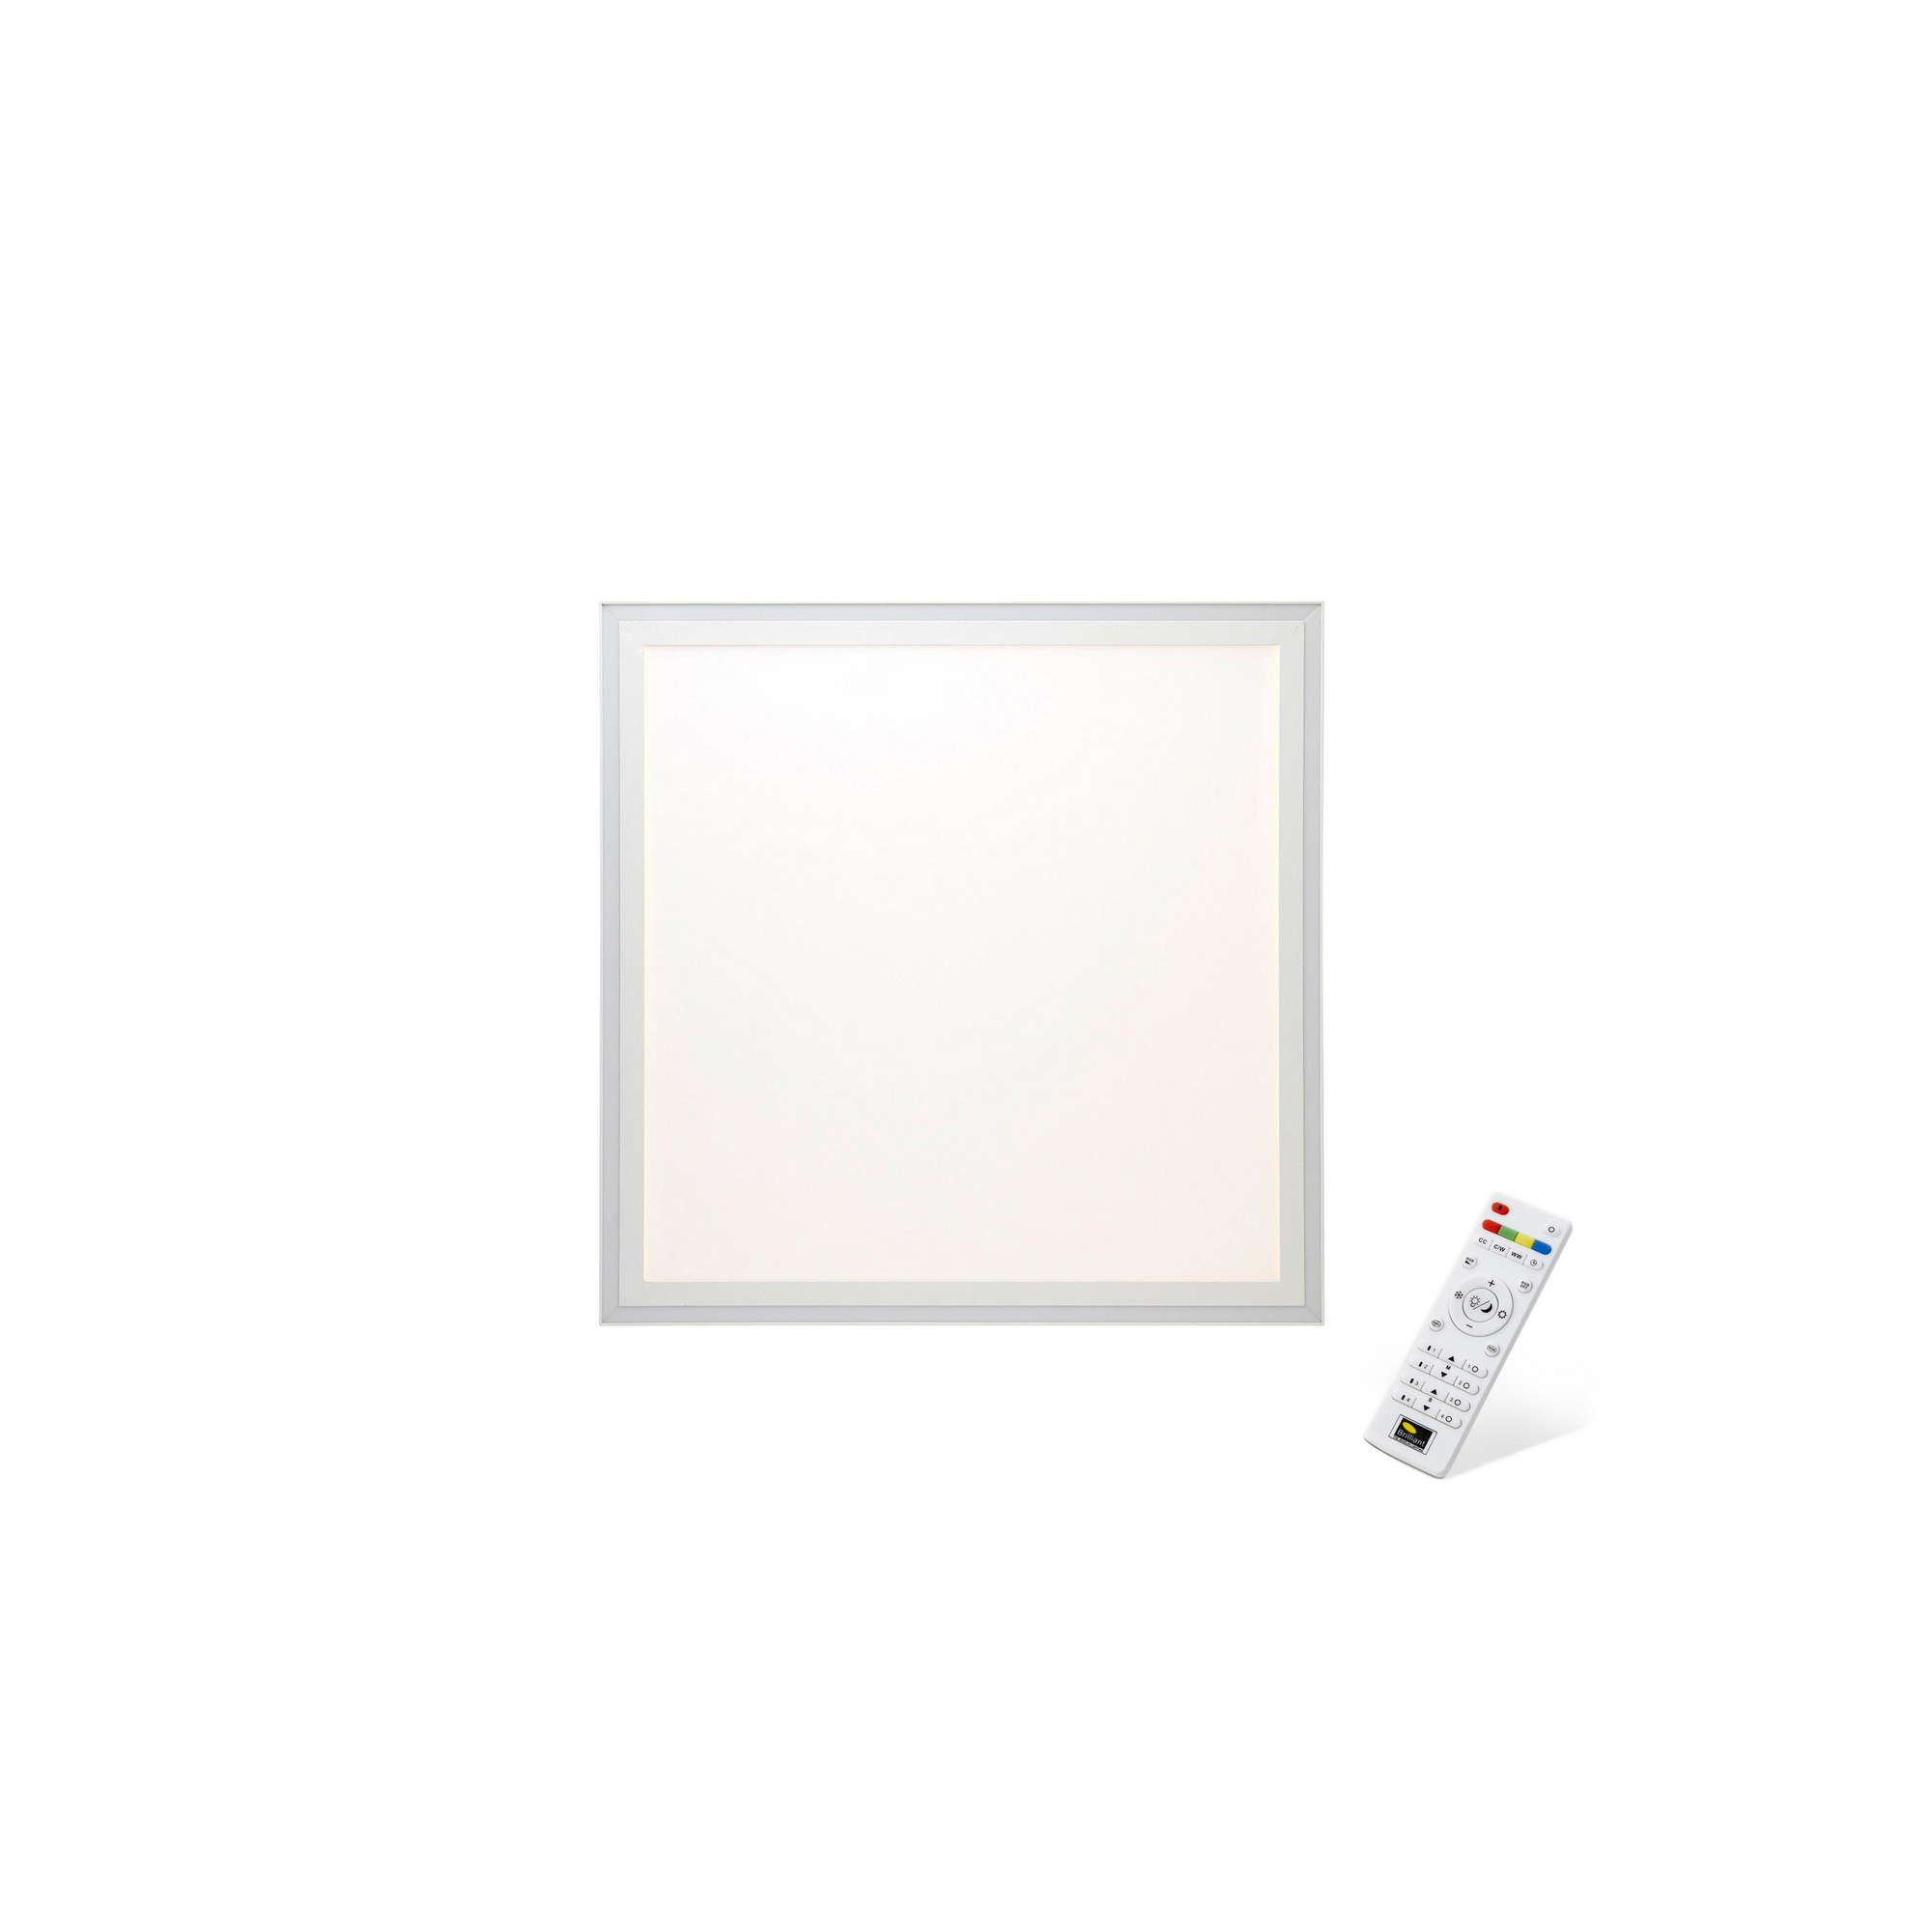 LED-Panelleuchte 'Lanette' mit farbigen LEDs 60 x 60 cm + product picture